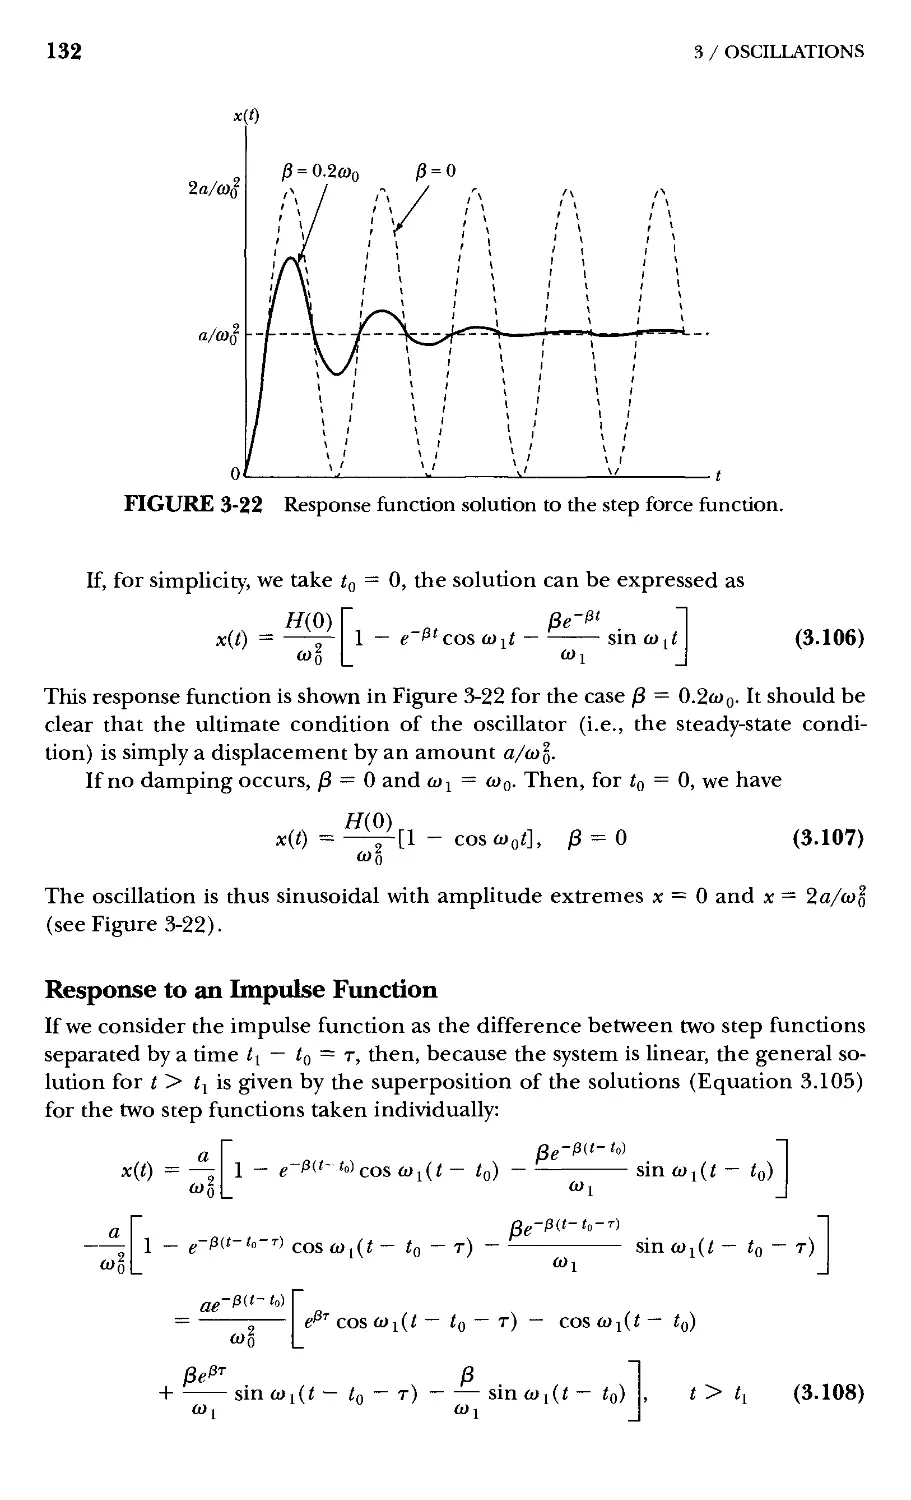 4.2 Nonlinear Oscillations